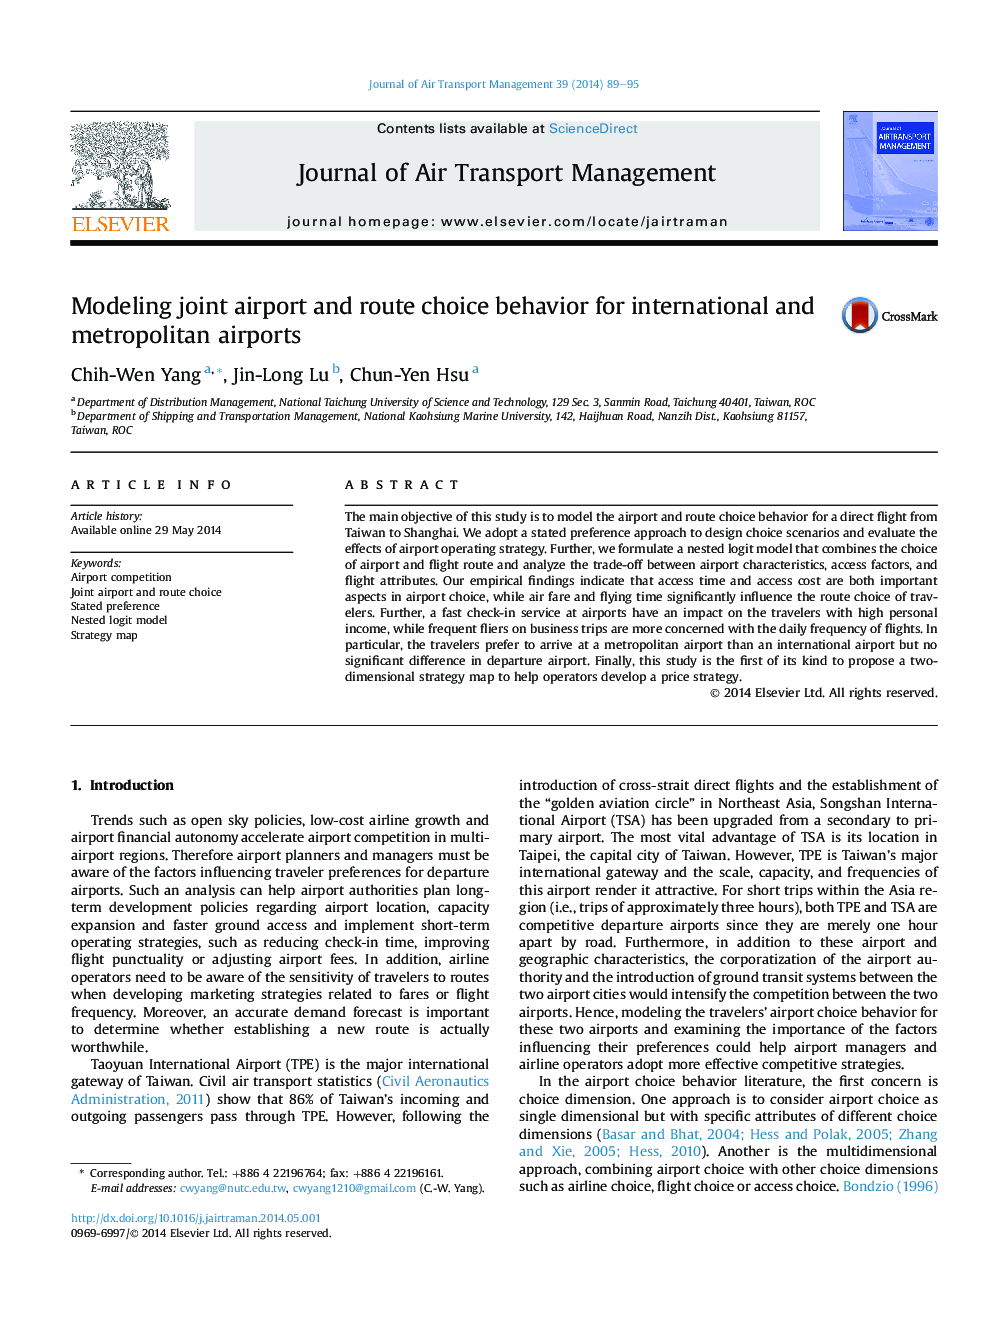 مدل سازی فرودگاه مشترک و رفتار انتخاب مسیر برای فرودگاه های بین المللی و شهری 